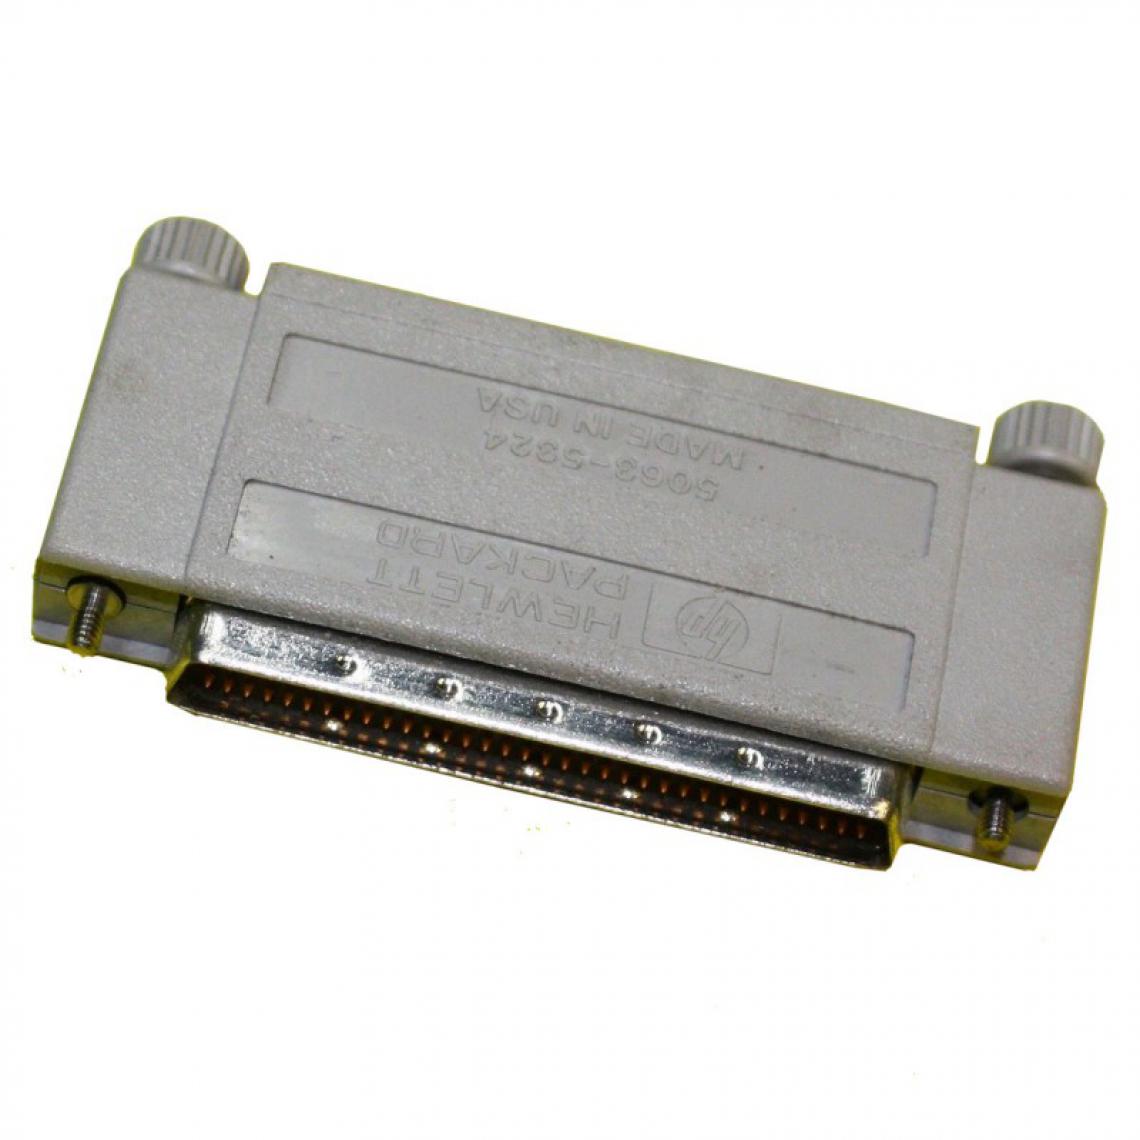 Hp - Terminateur SCSI LVD / SE HP 5063-5324 68-Pin - Carte Contrôleur USB